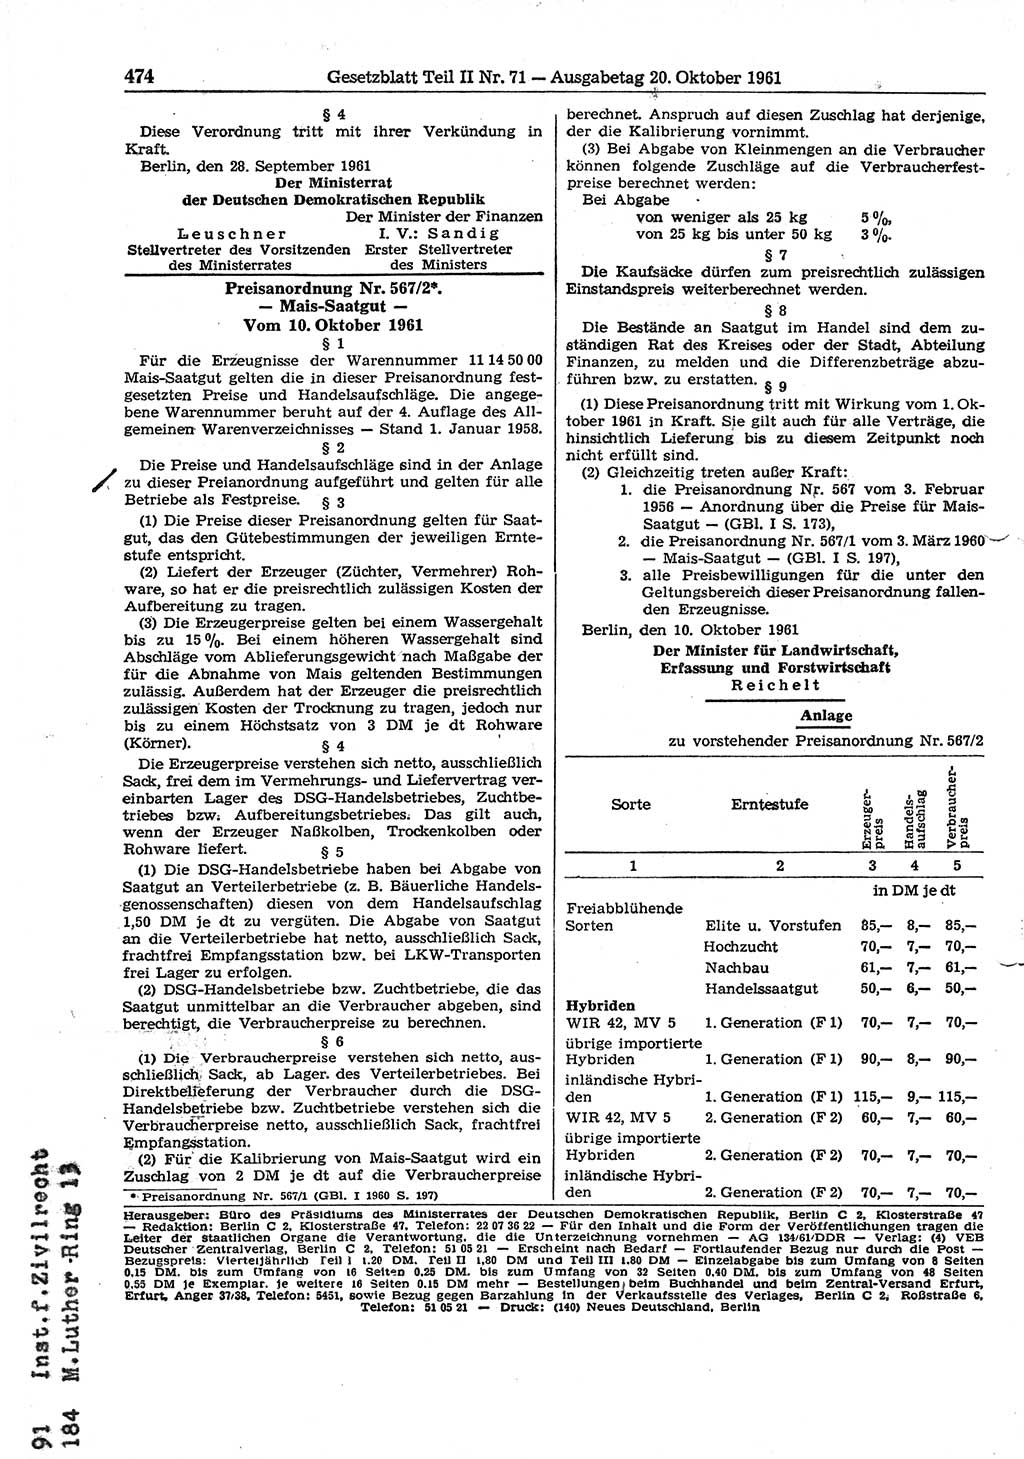 Gesetzblatt (GBl.) der Deutschen Demokratischen Republik (DDR) Teil ⅠⅠ 1961, Seite 474 (GBl. DDR ⅠⅠ 1961, S. 474)